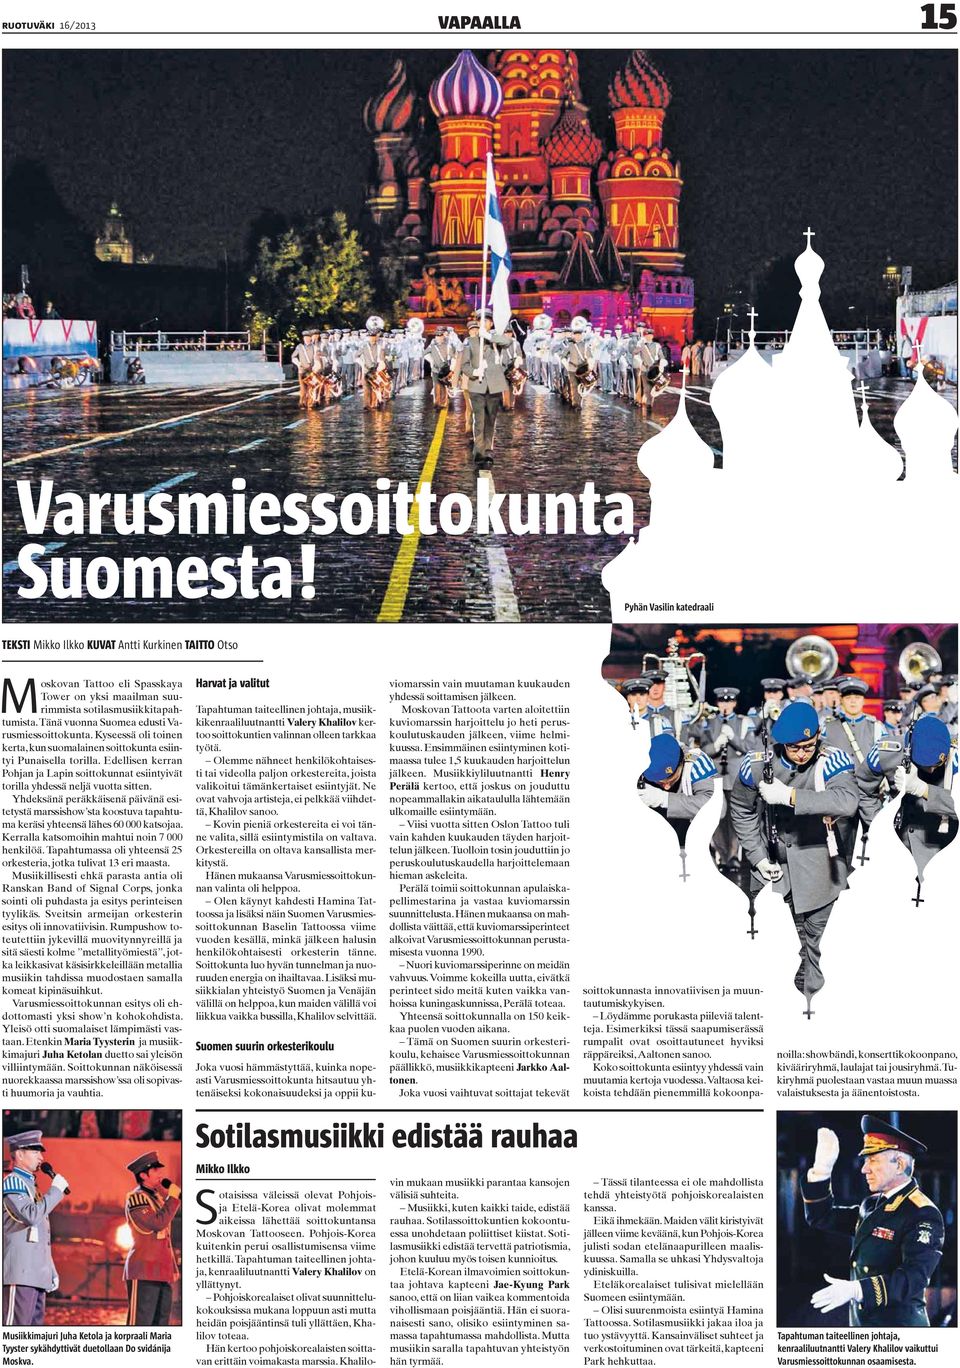 Tänä vuonna Suomea edusti Varusmiessoittokunta. Kyseessä oli toinen kerta, kun suomalainen soittokunta esiintyi Punaisella torilla.